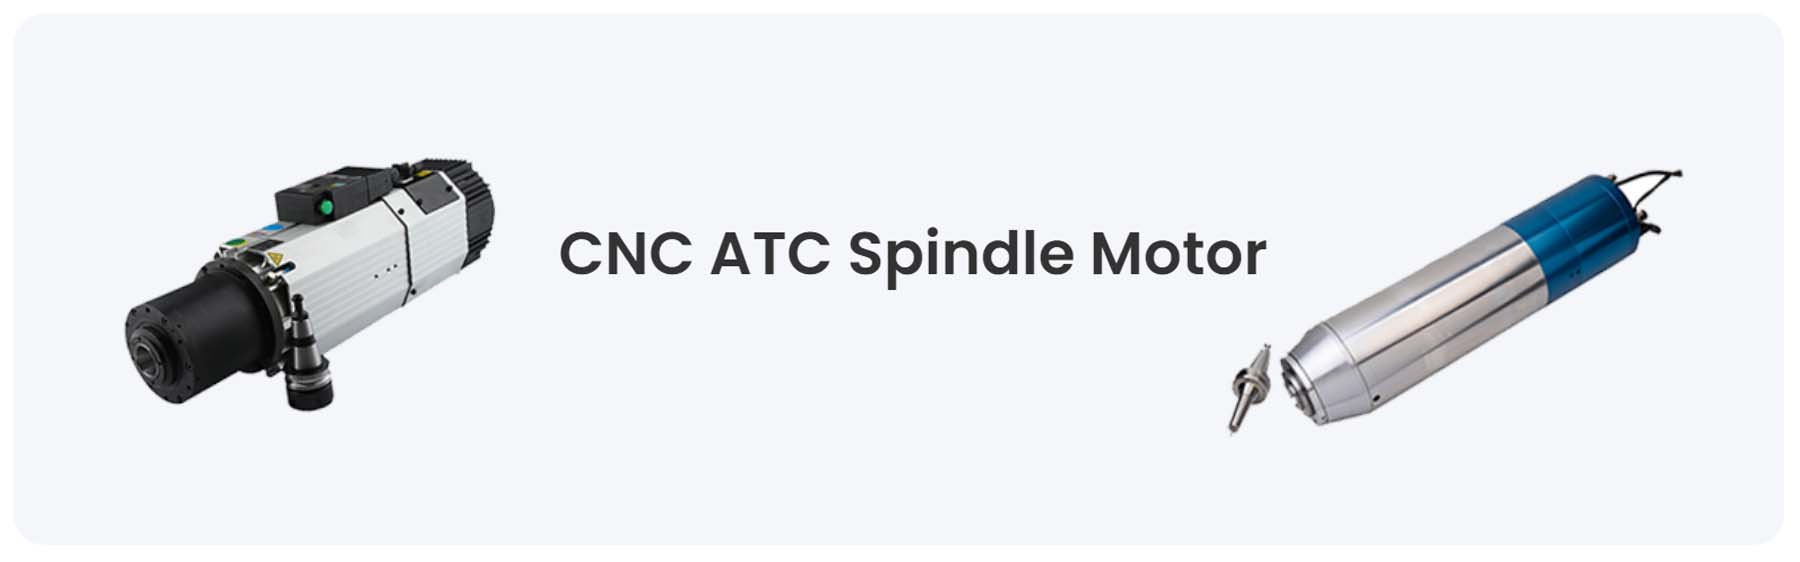 CNC ATC スピンドルモーター - HOLRY モーター